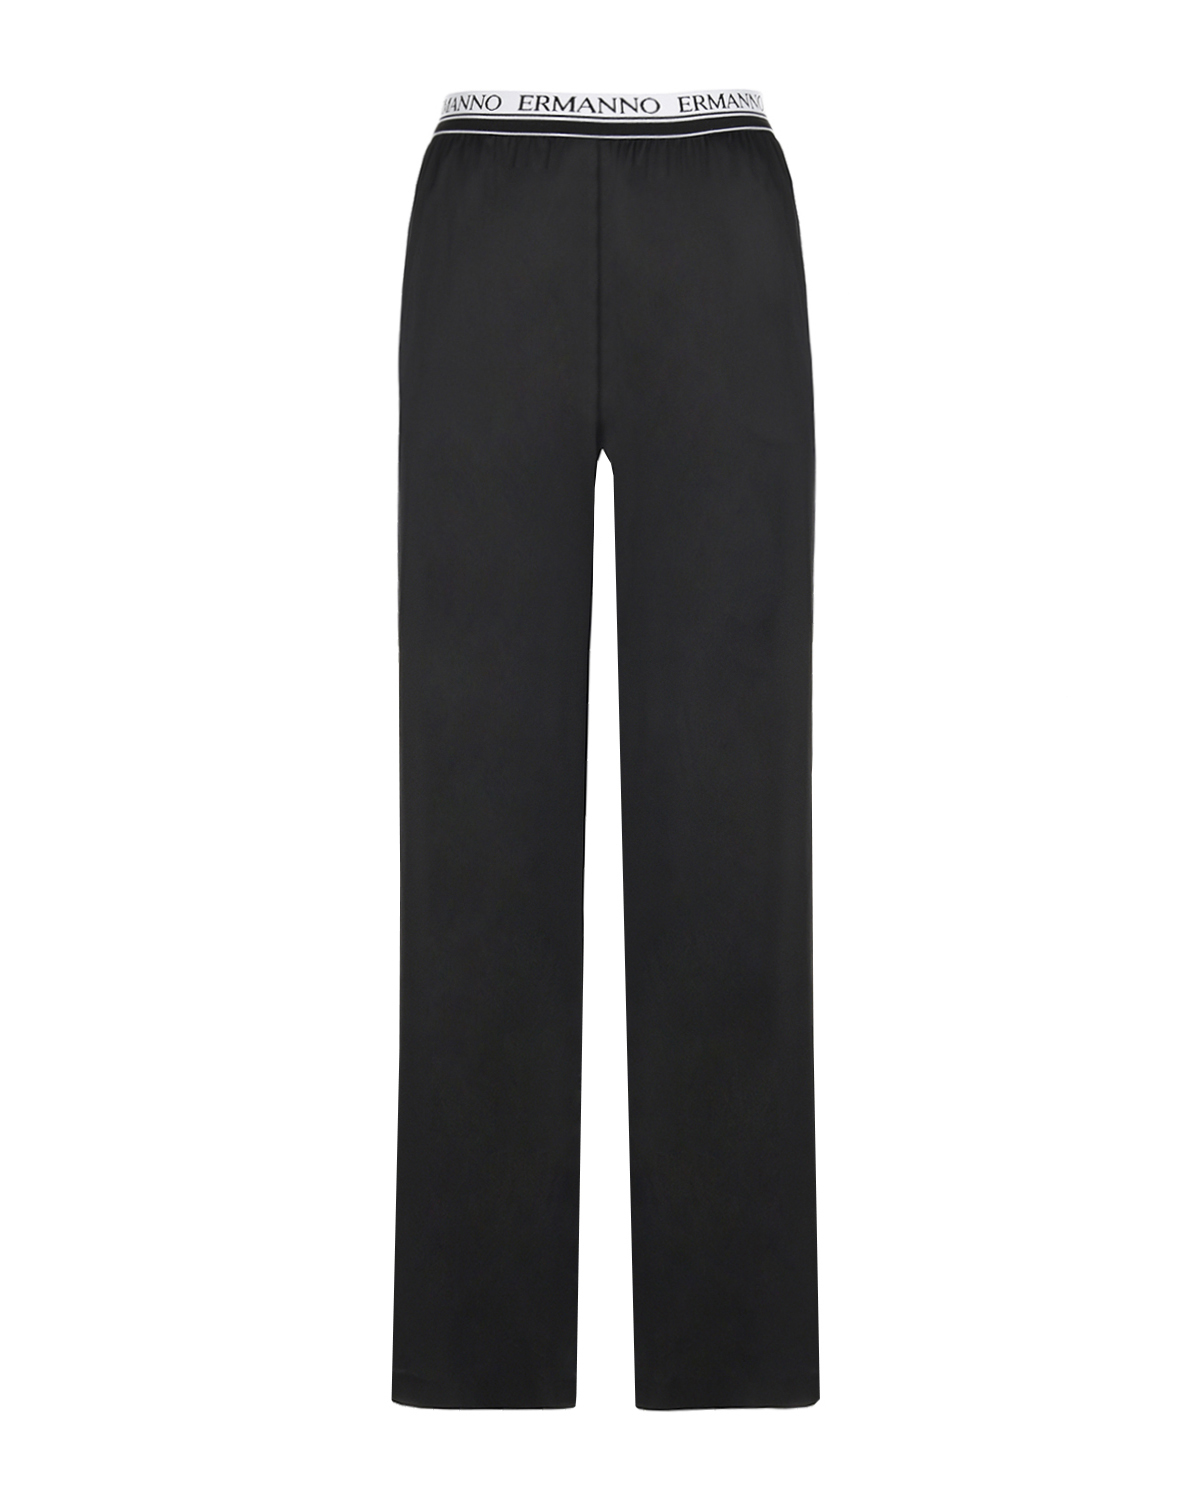 Черные брюки с поясом на резинке Ermanno Ermanno Scervino, размер 44, цвет черный - фото 1